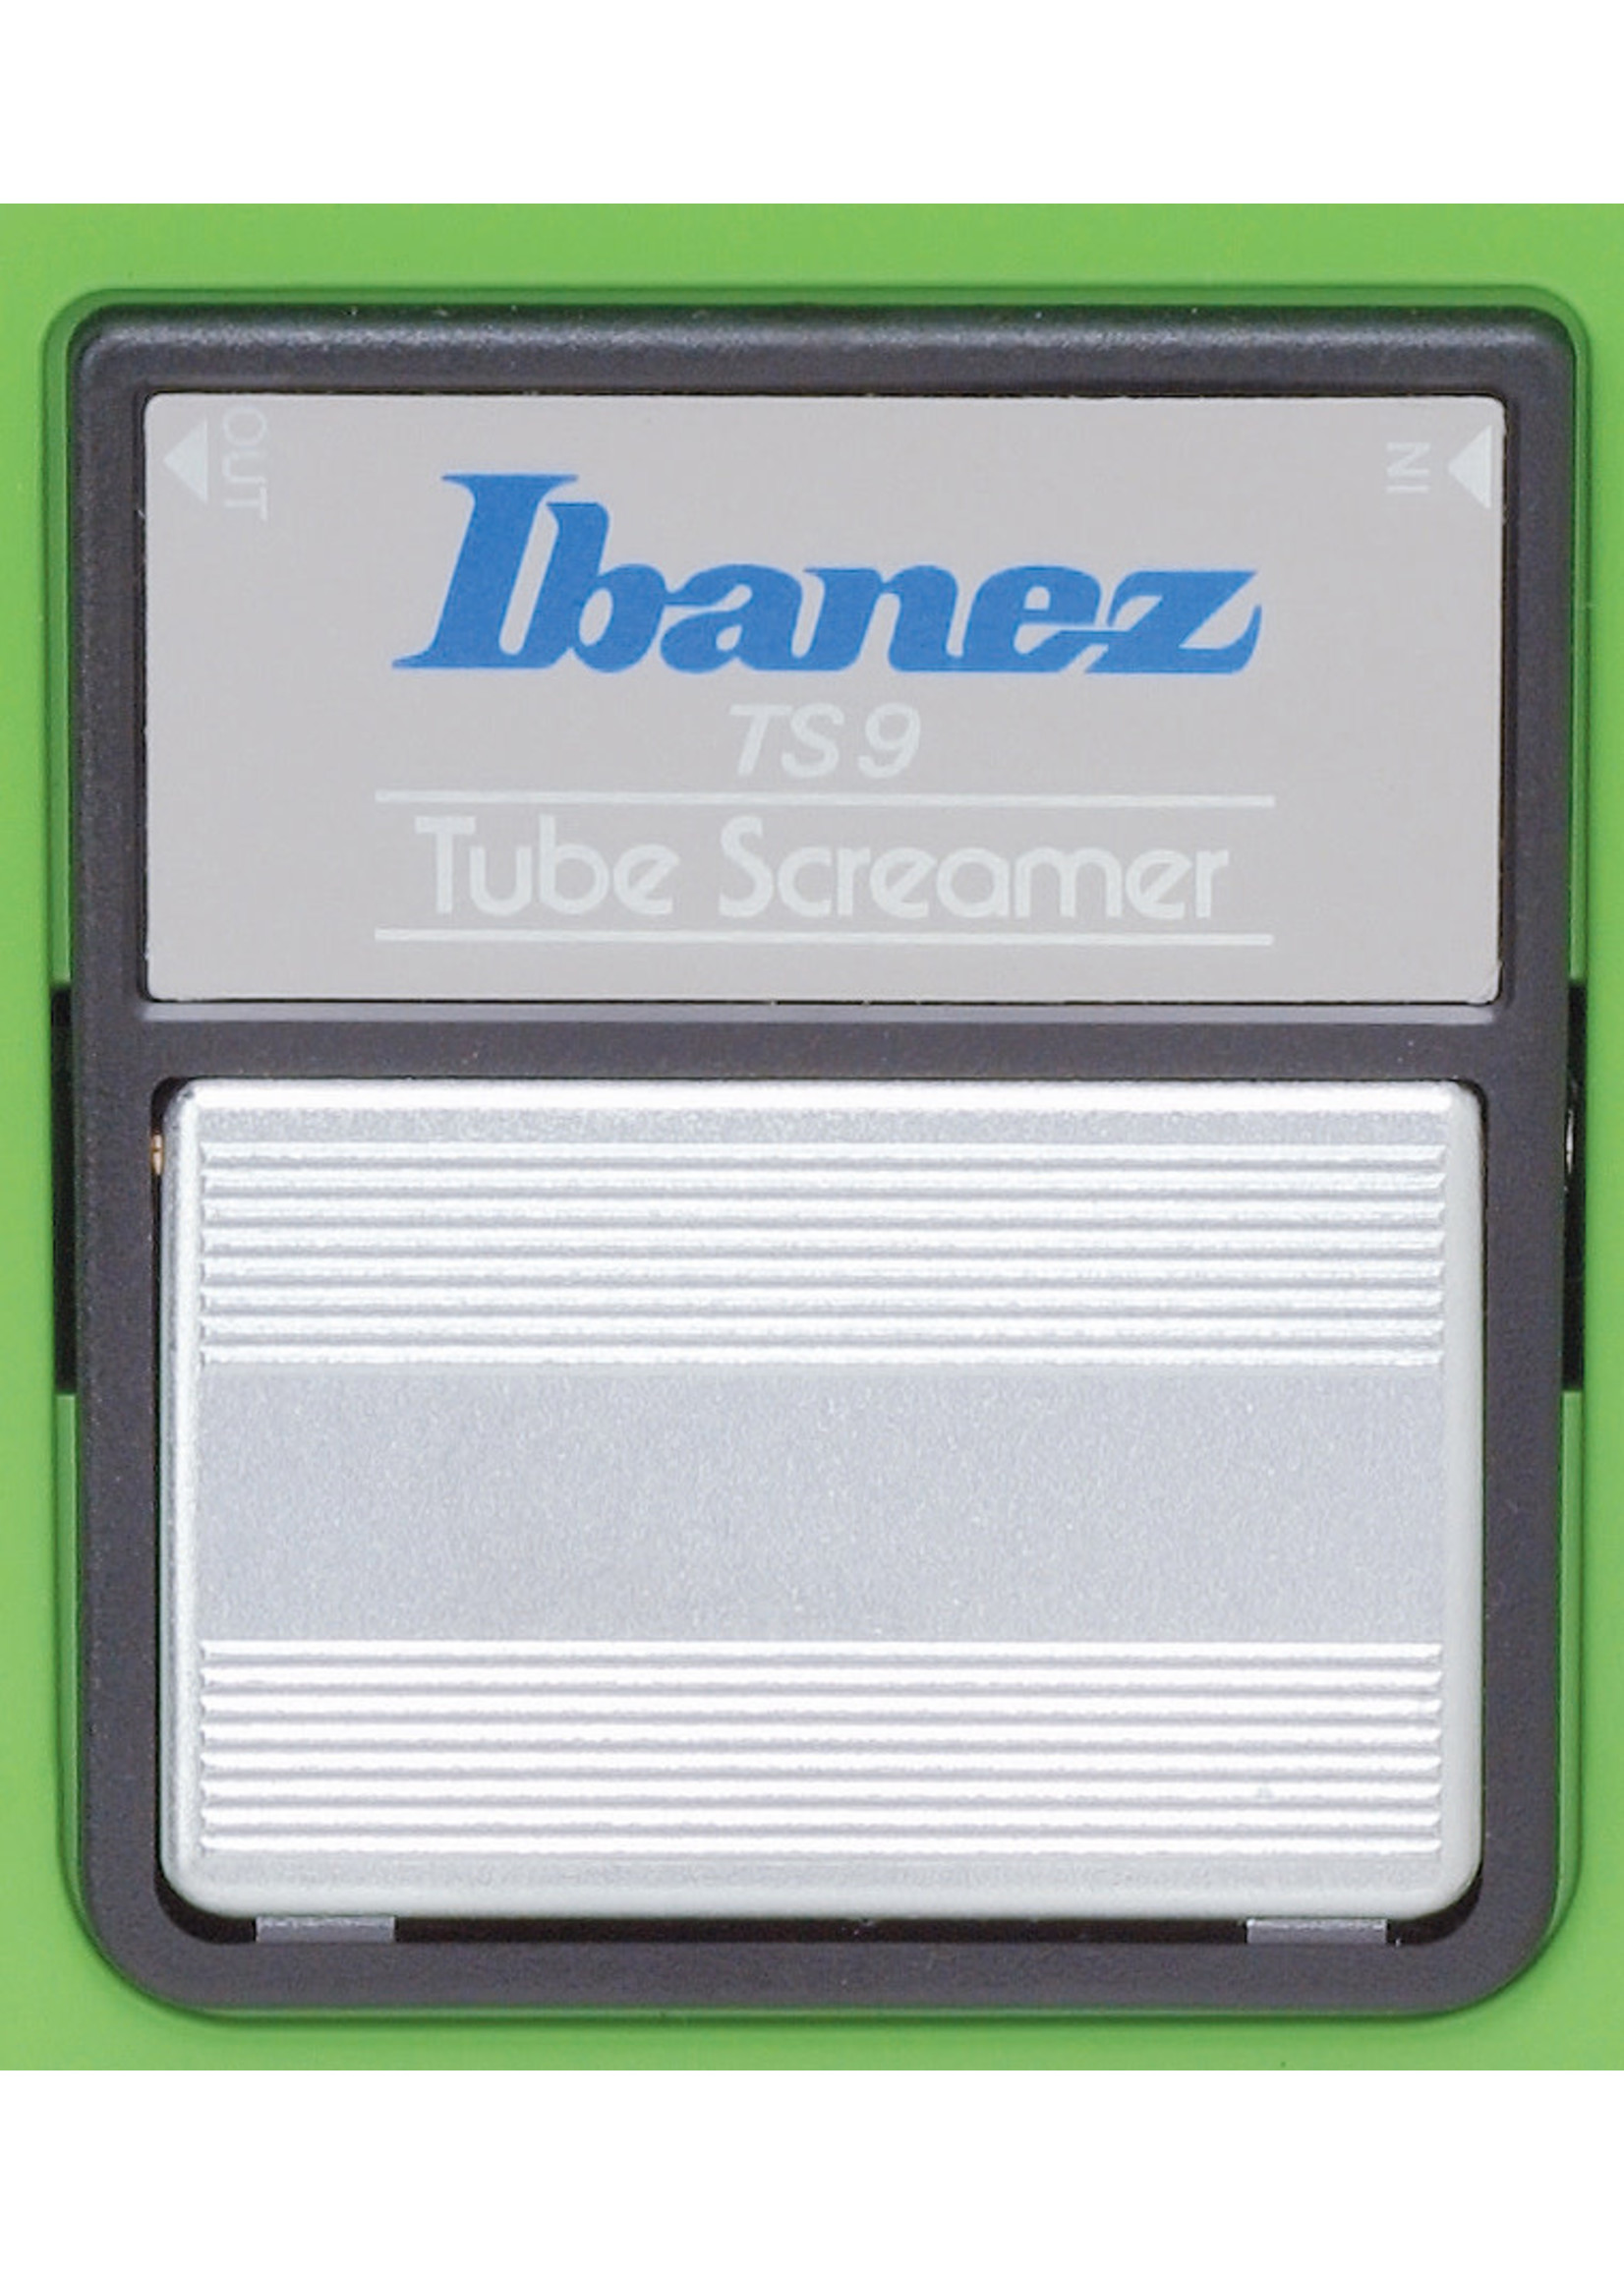 IBANEZ Ibanez Tube Screamer TS9